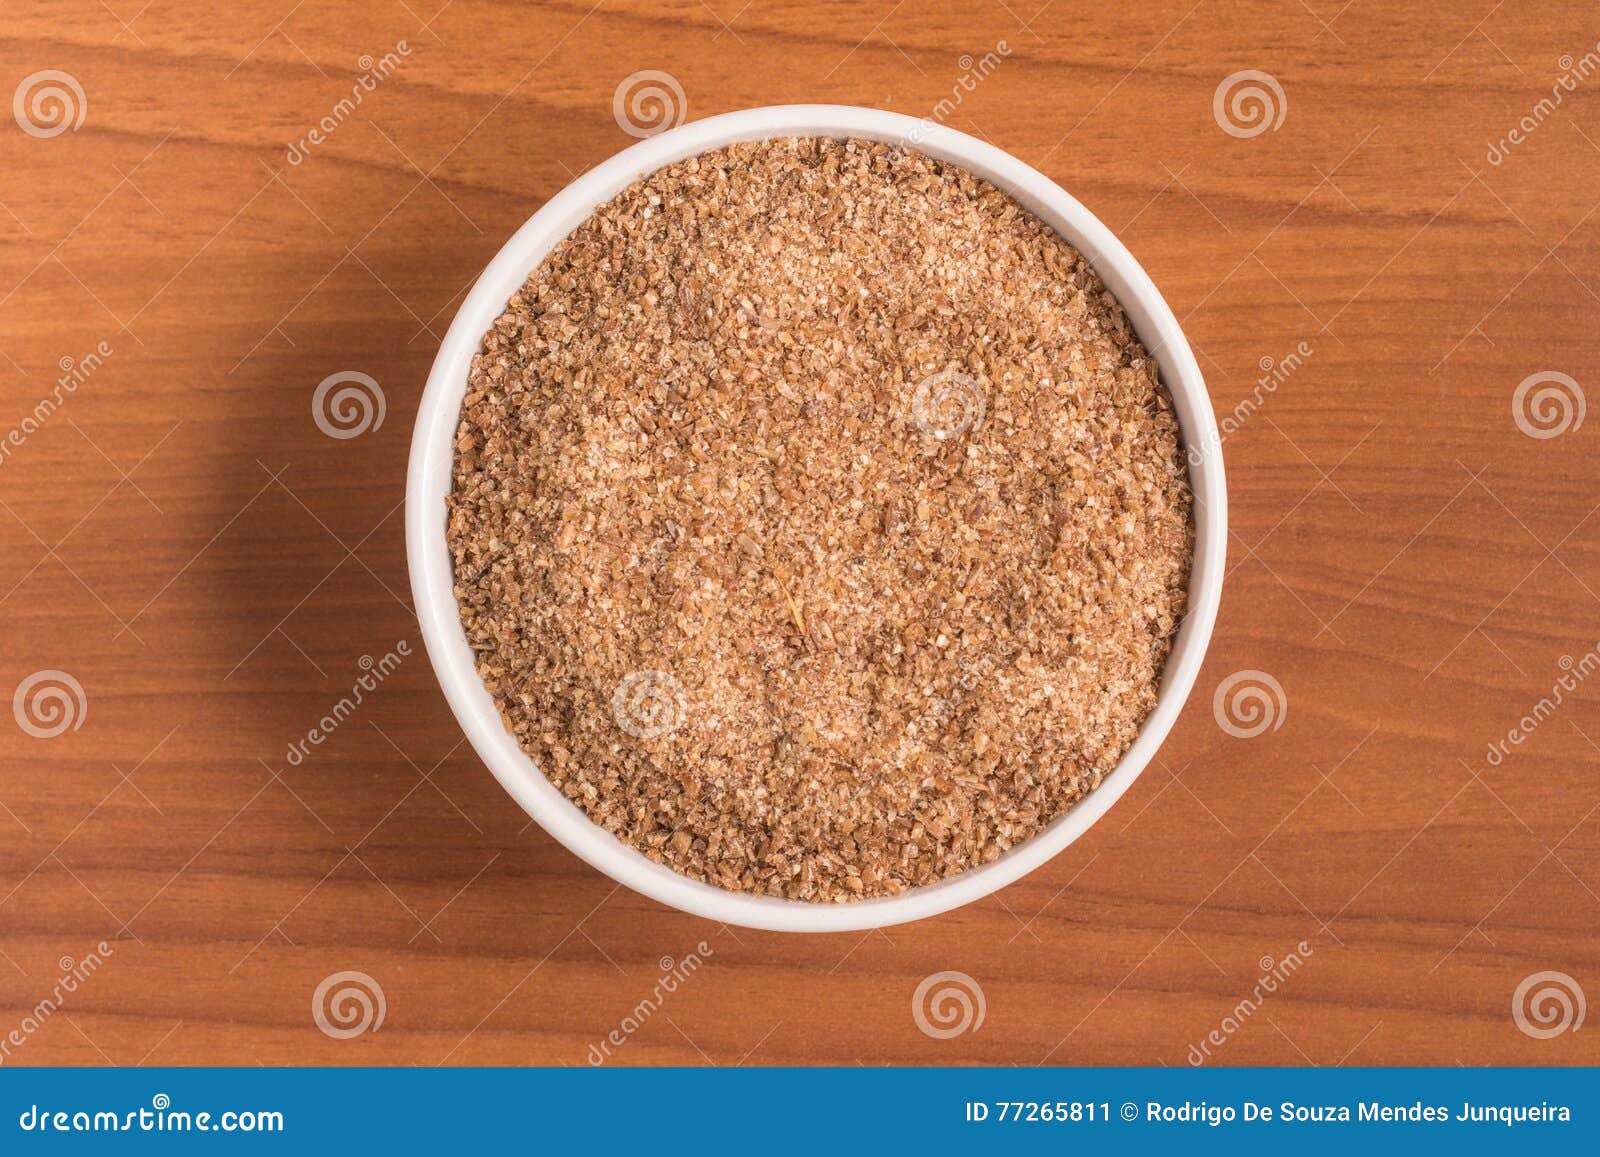 ground wheat into a bowl. trigo para quibe. kibbeh